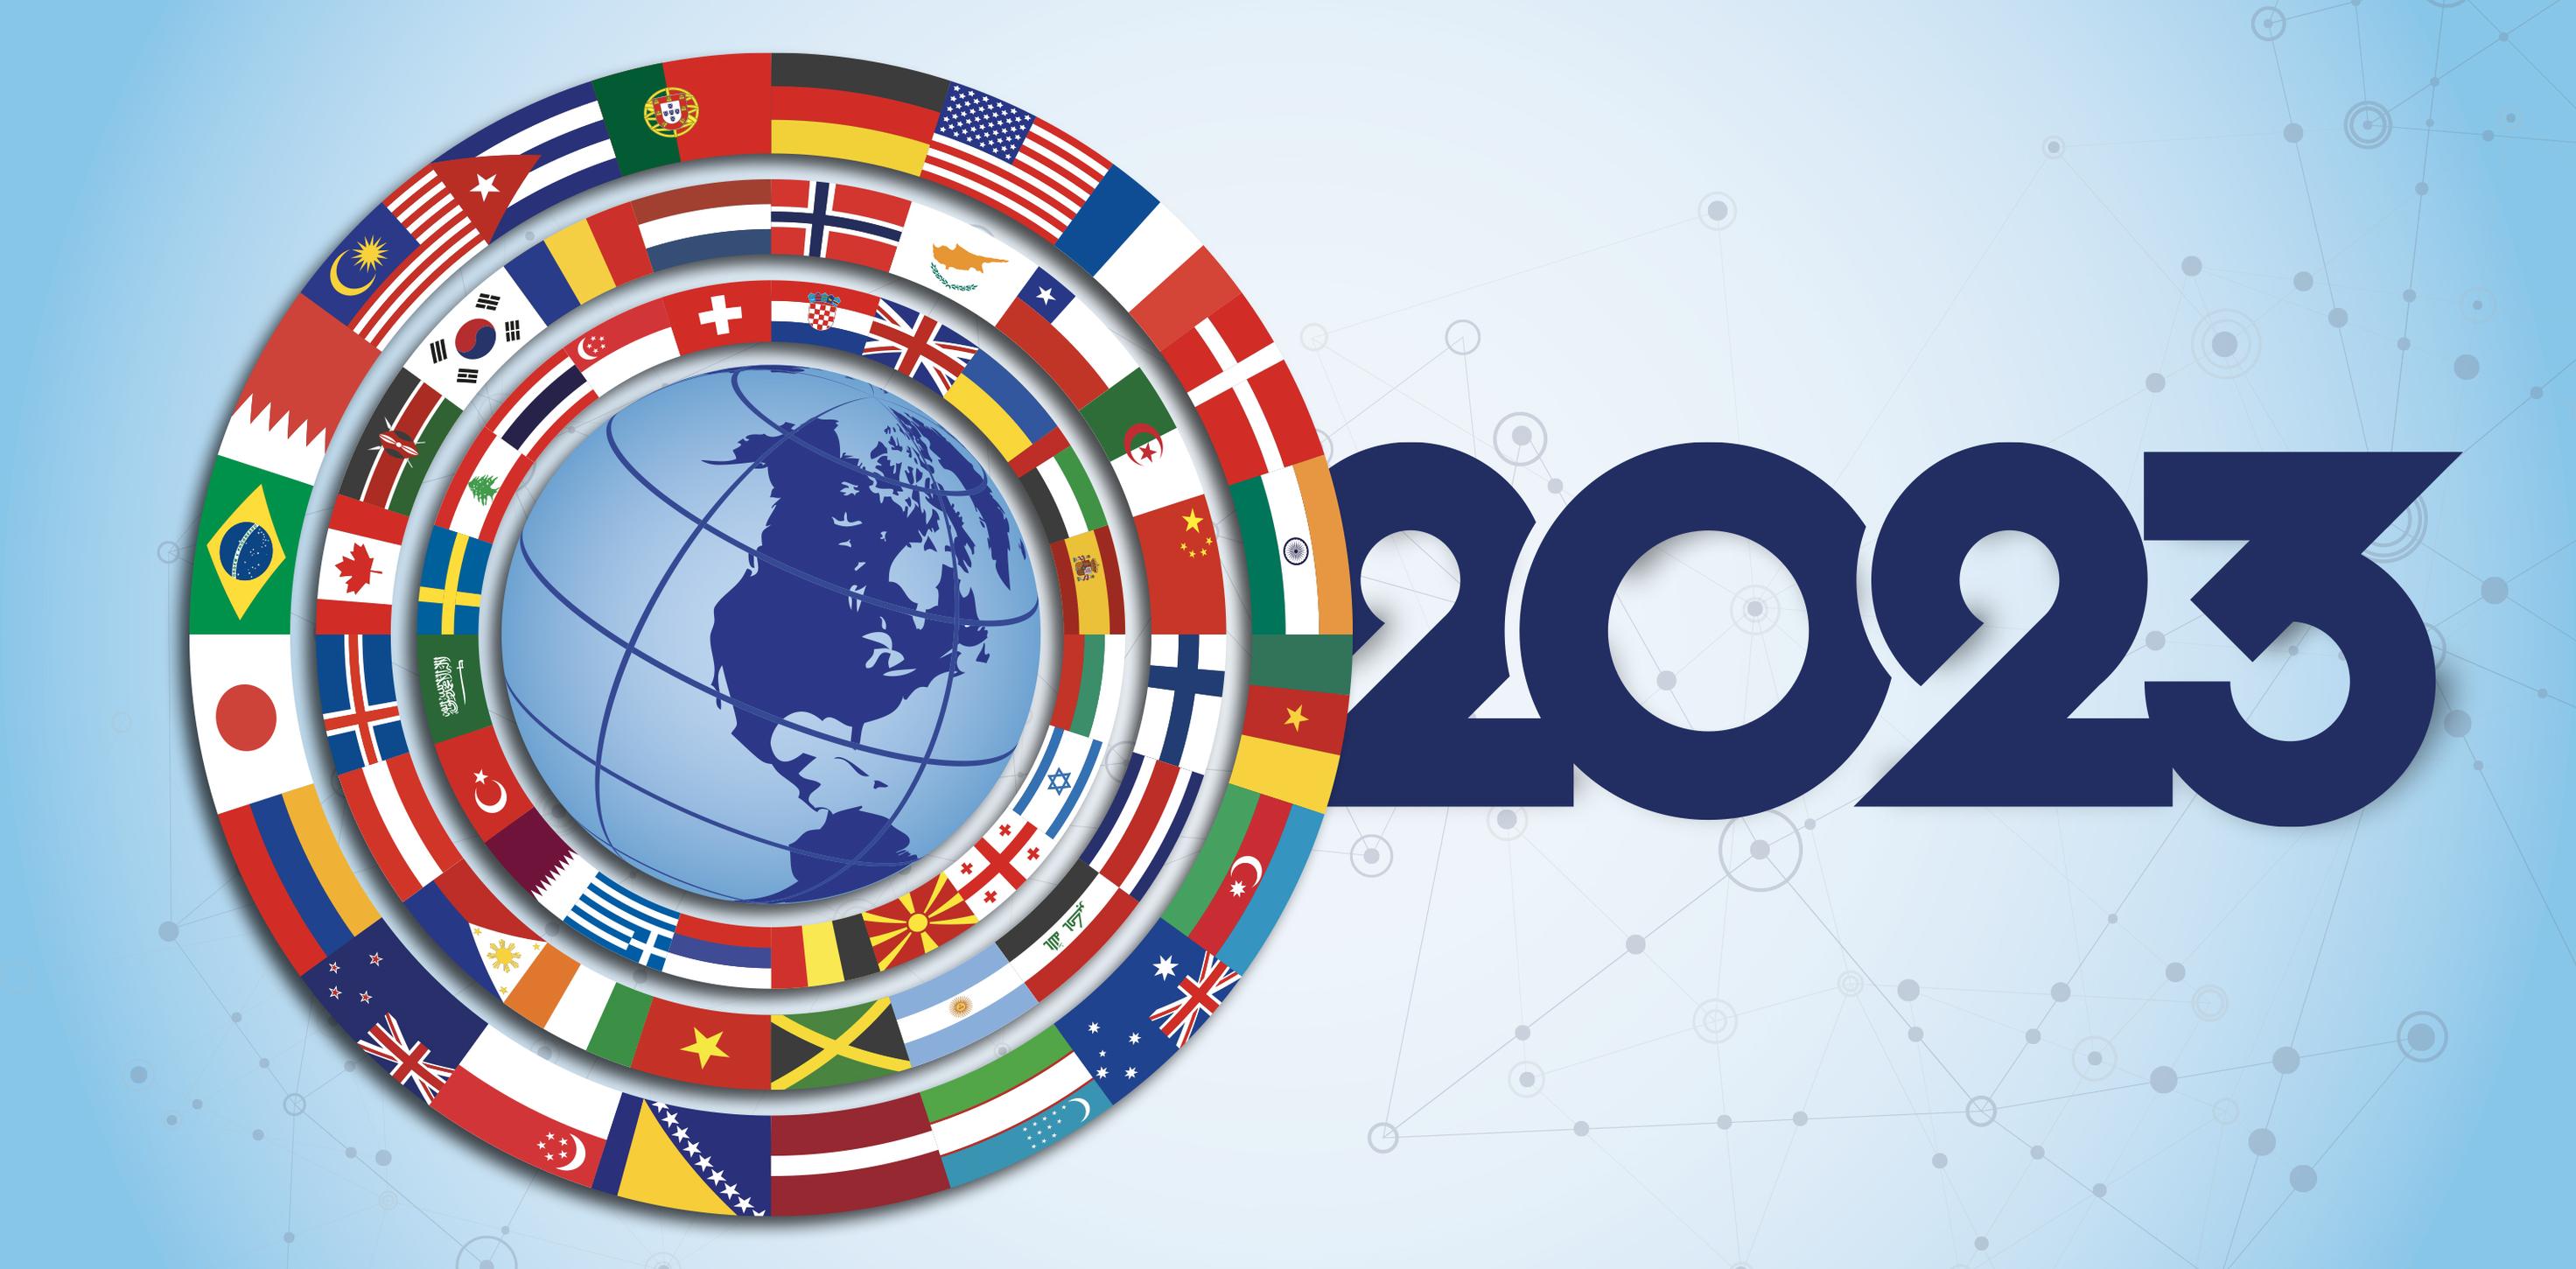 الاتجاهات المتوقعة في العالم خلال عام 2023 (ملف خاص)